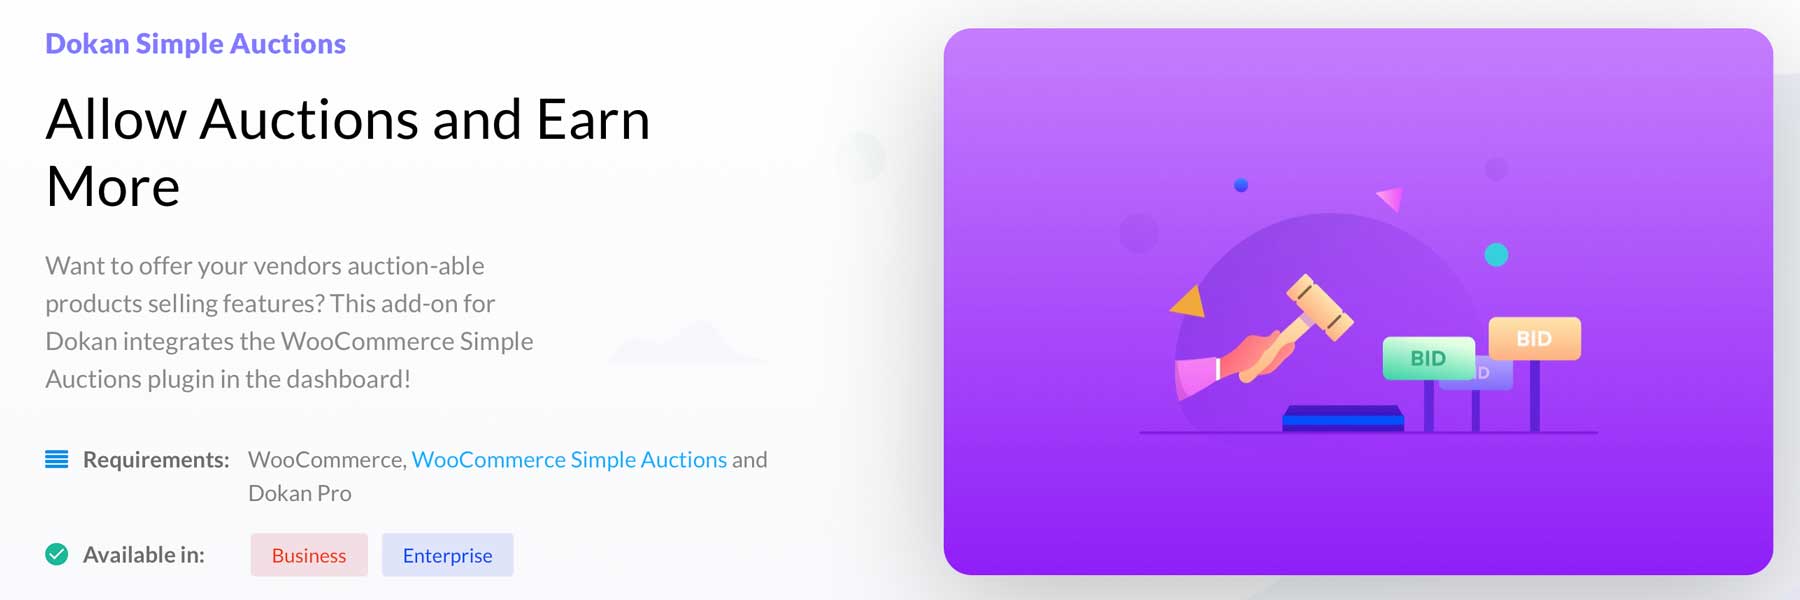 Dokan Simple Auctions plugin